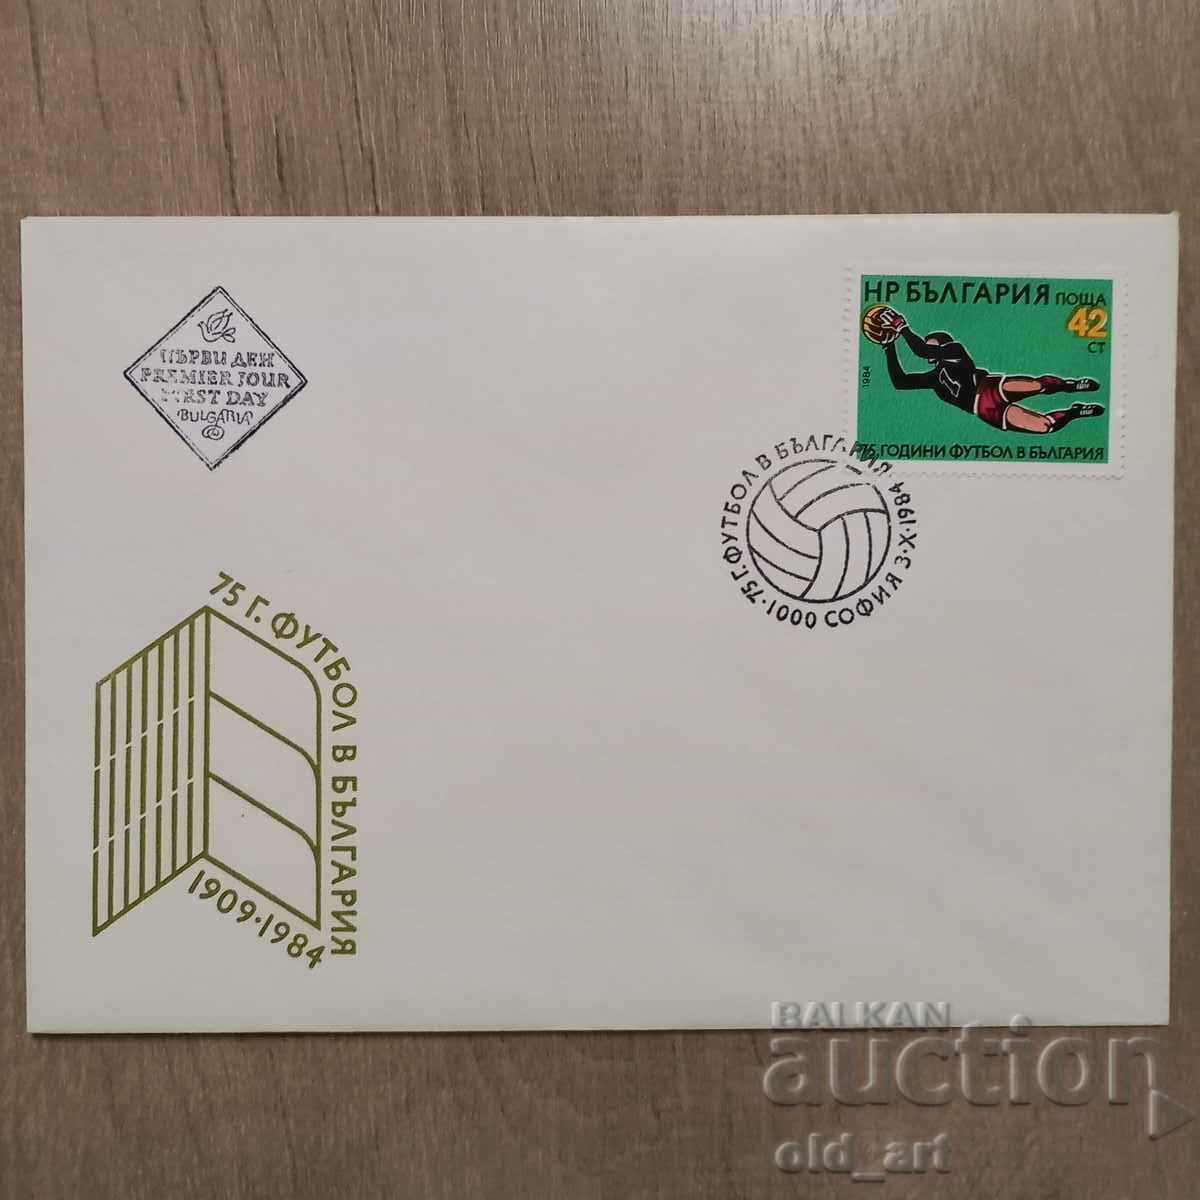 Postal envelope - 75 years of football in Bulgaria